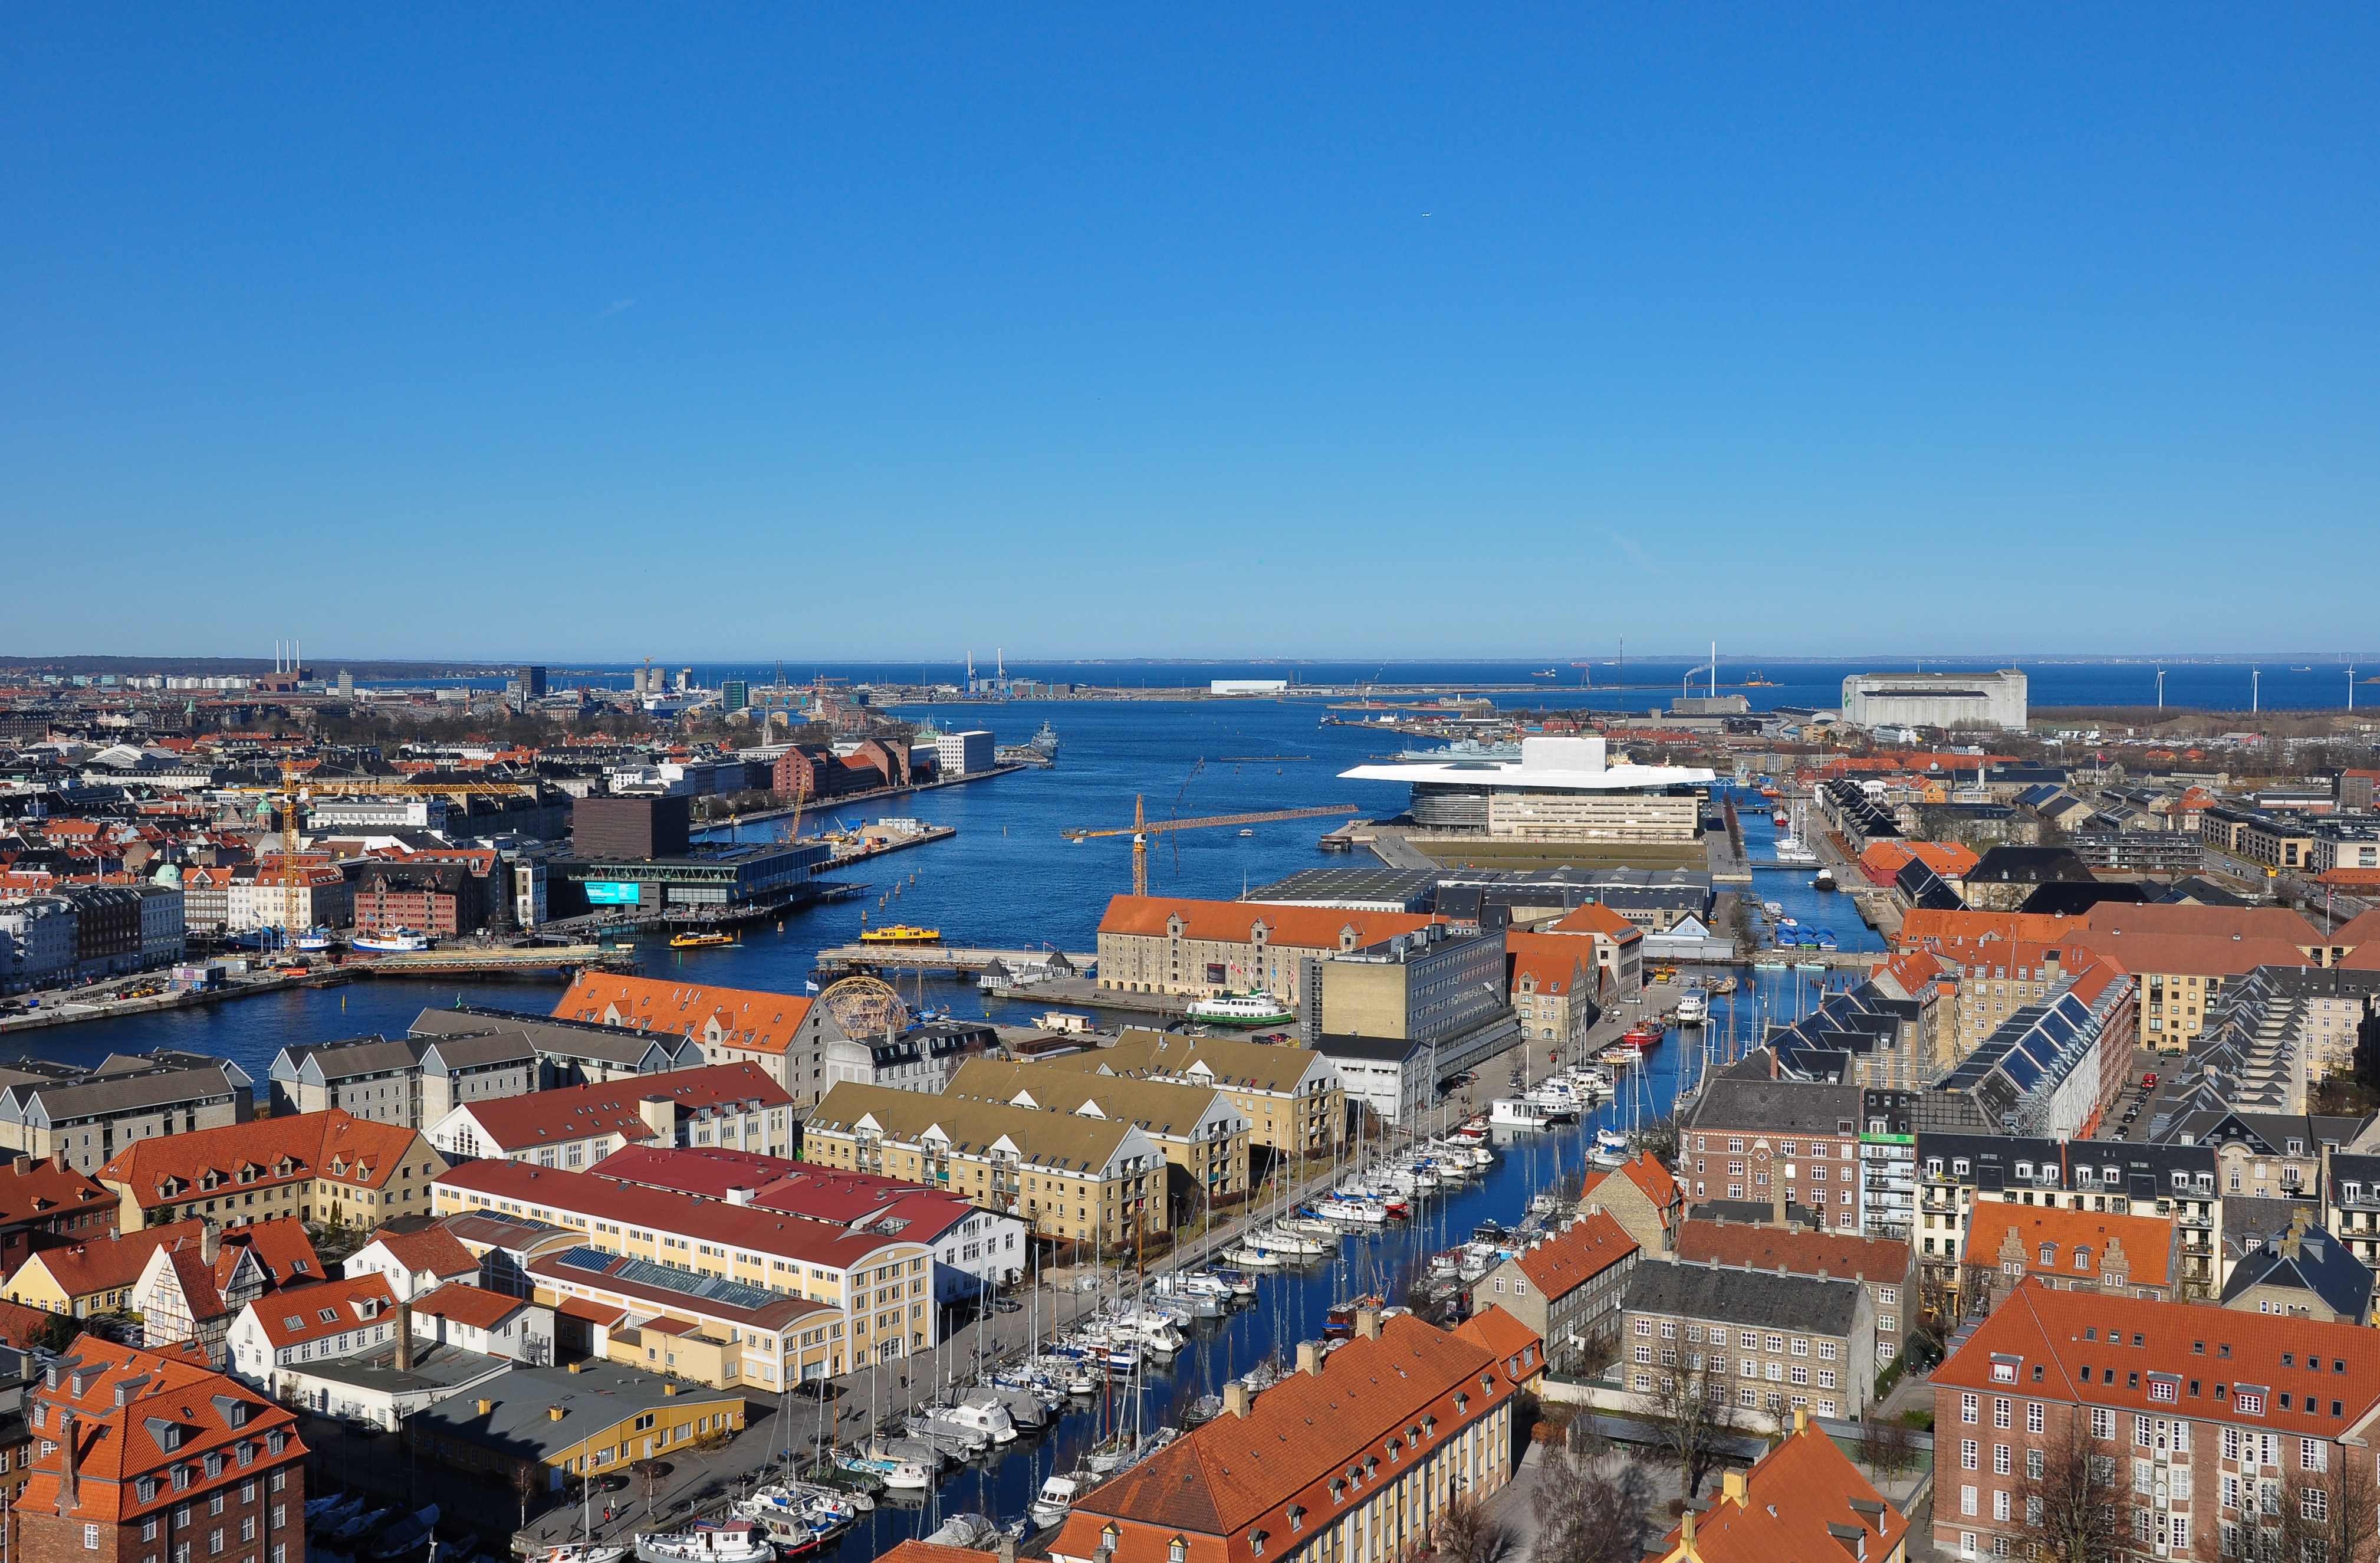 Københavns Havn (Copenhagen Port)